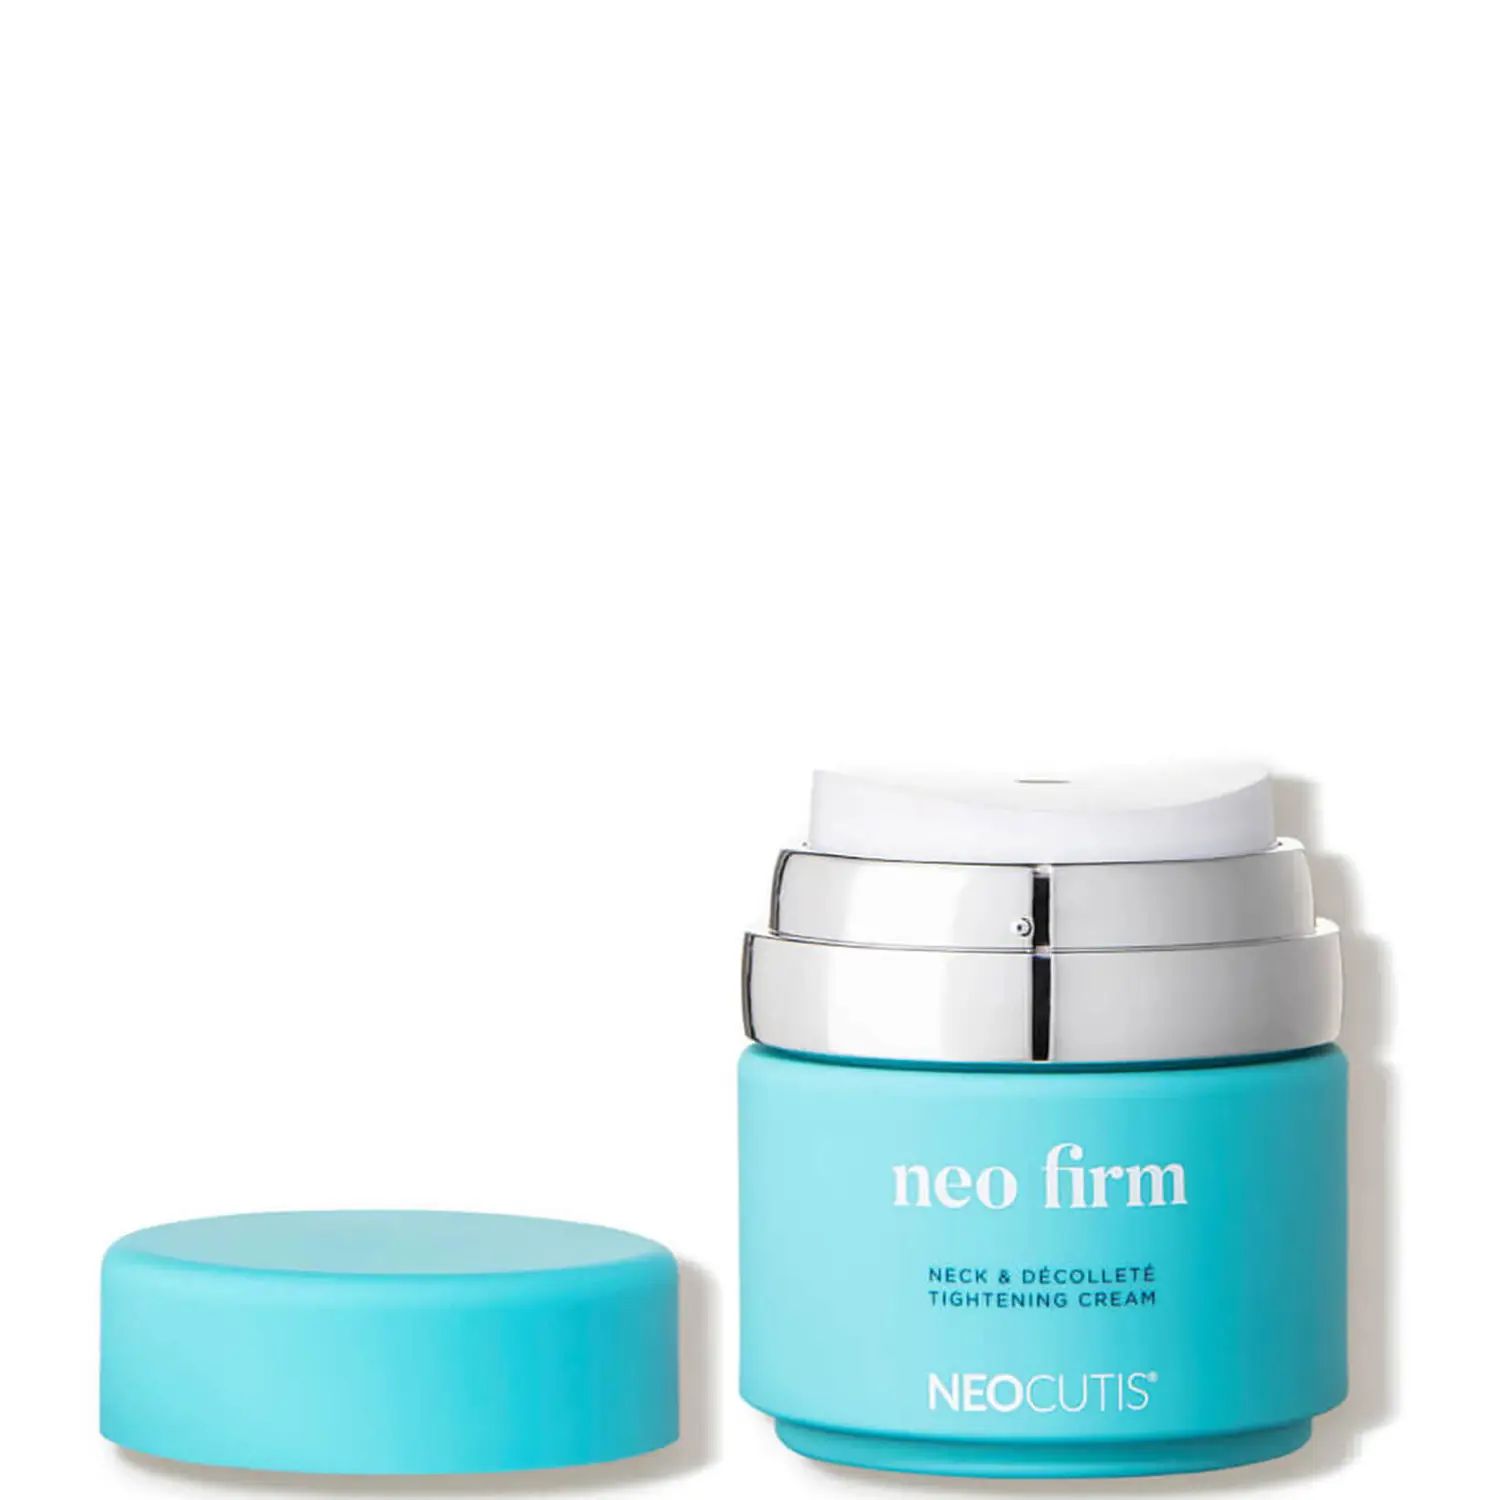 Neocutis NEO Firm Neck Decollete Tightening Cream (50 g.) | Dermstore (US)